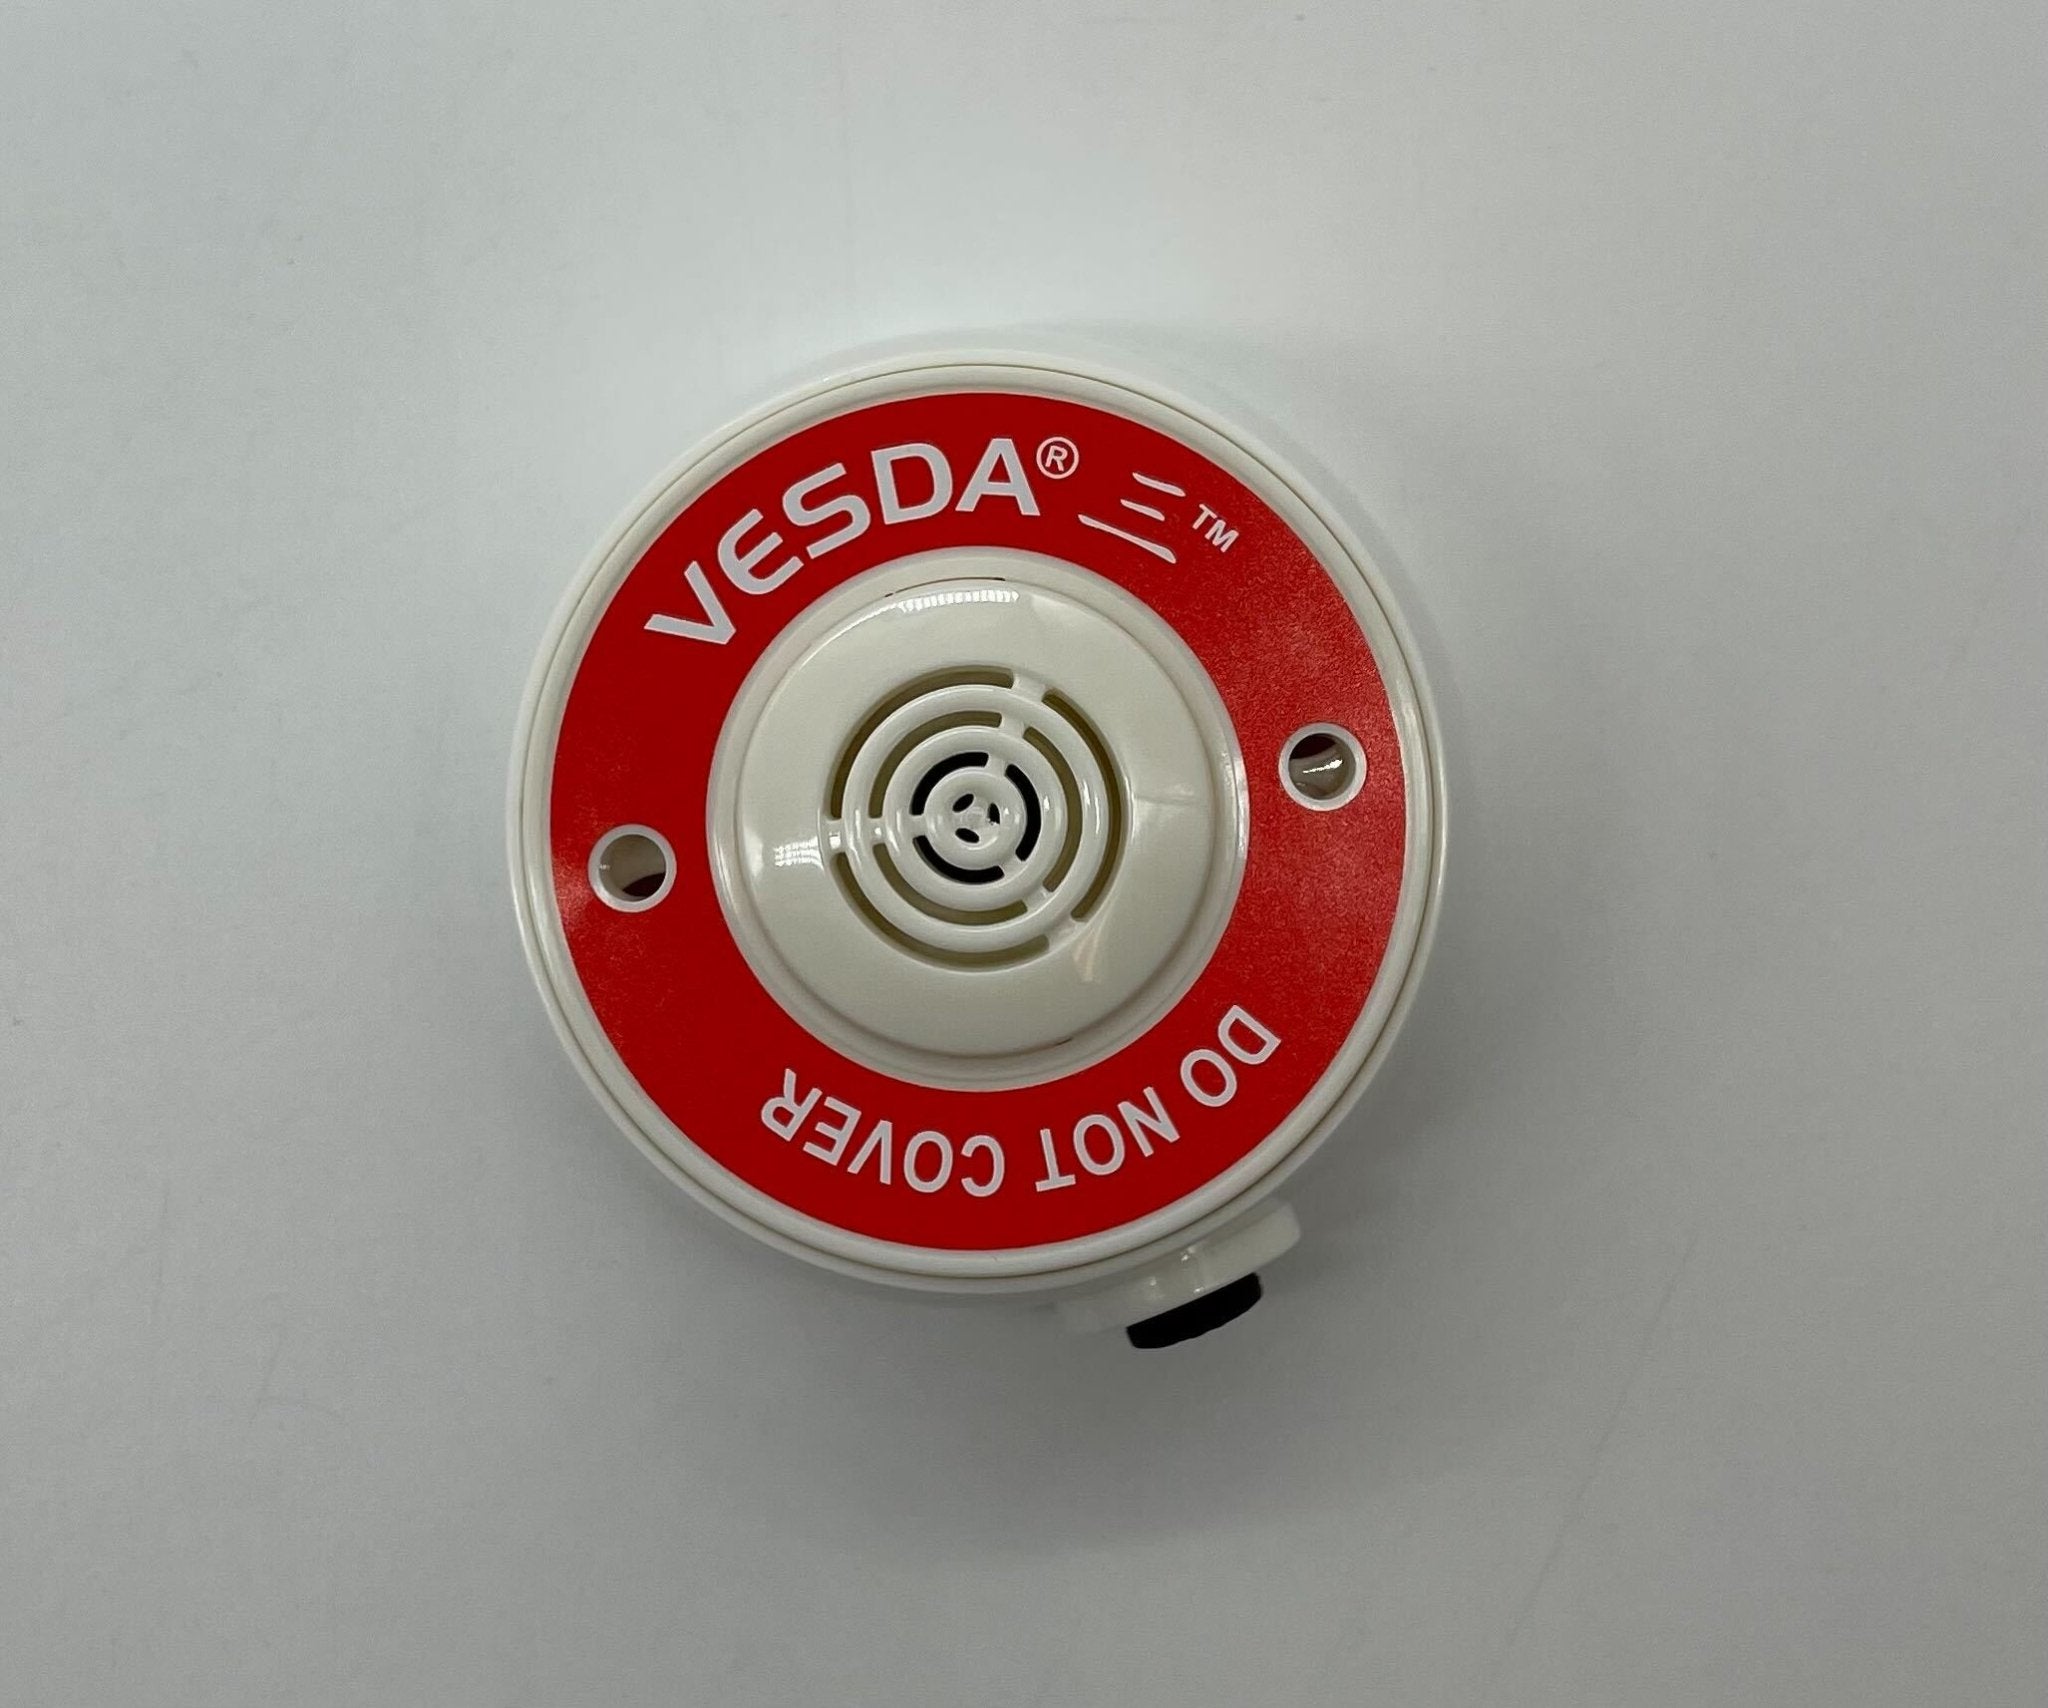 Vesda VSP-983-W 4MM Surface Mount Sampling Point - The Fire Alarm Supplier